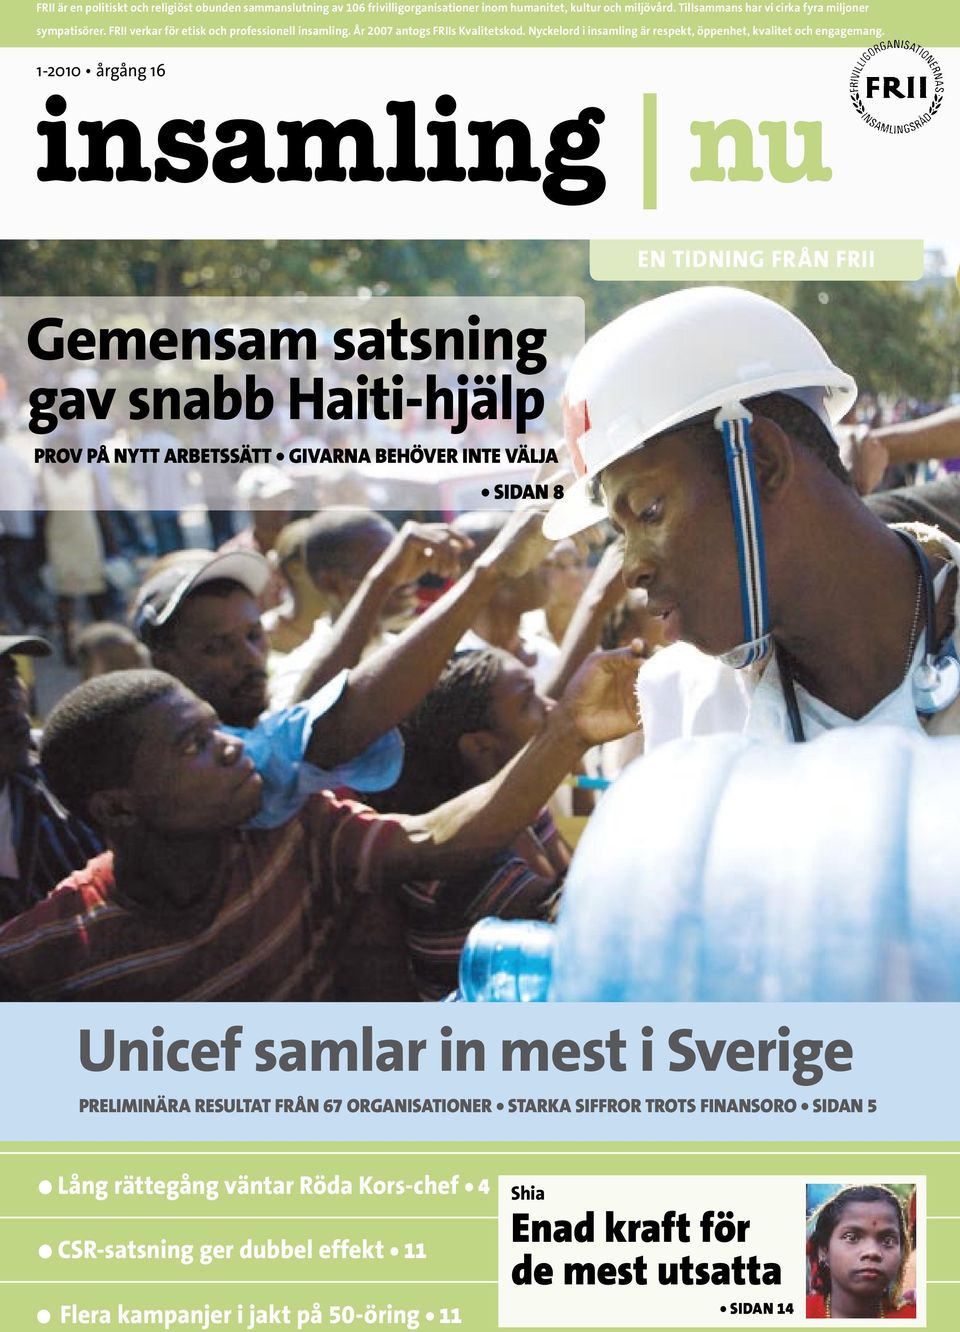 1-2010 årgång 16 insamling nu en tidning från frii gemensam satsning gav snabb haiti-hjälp PROV PÅ NYTT ARBETSSÄTT GIVARNA BEHÖVER INTE VÄLJA SIDAN 8 unicef samlar in mest i Sverige